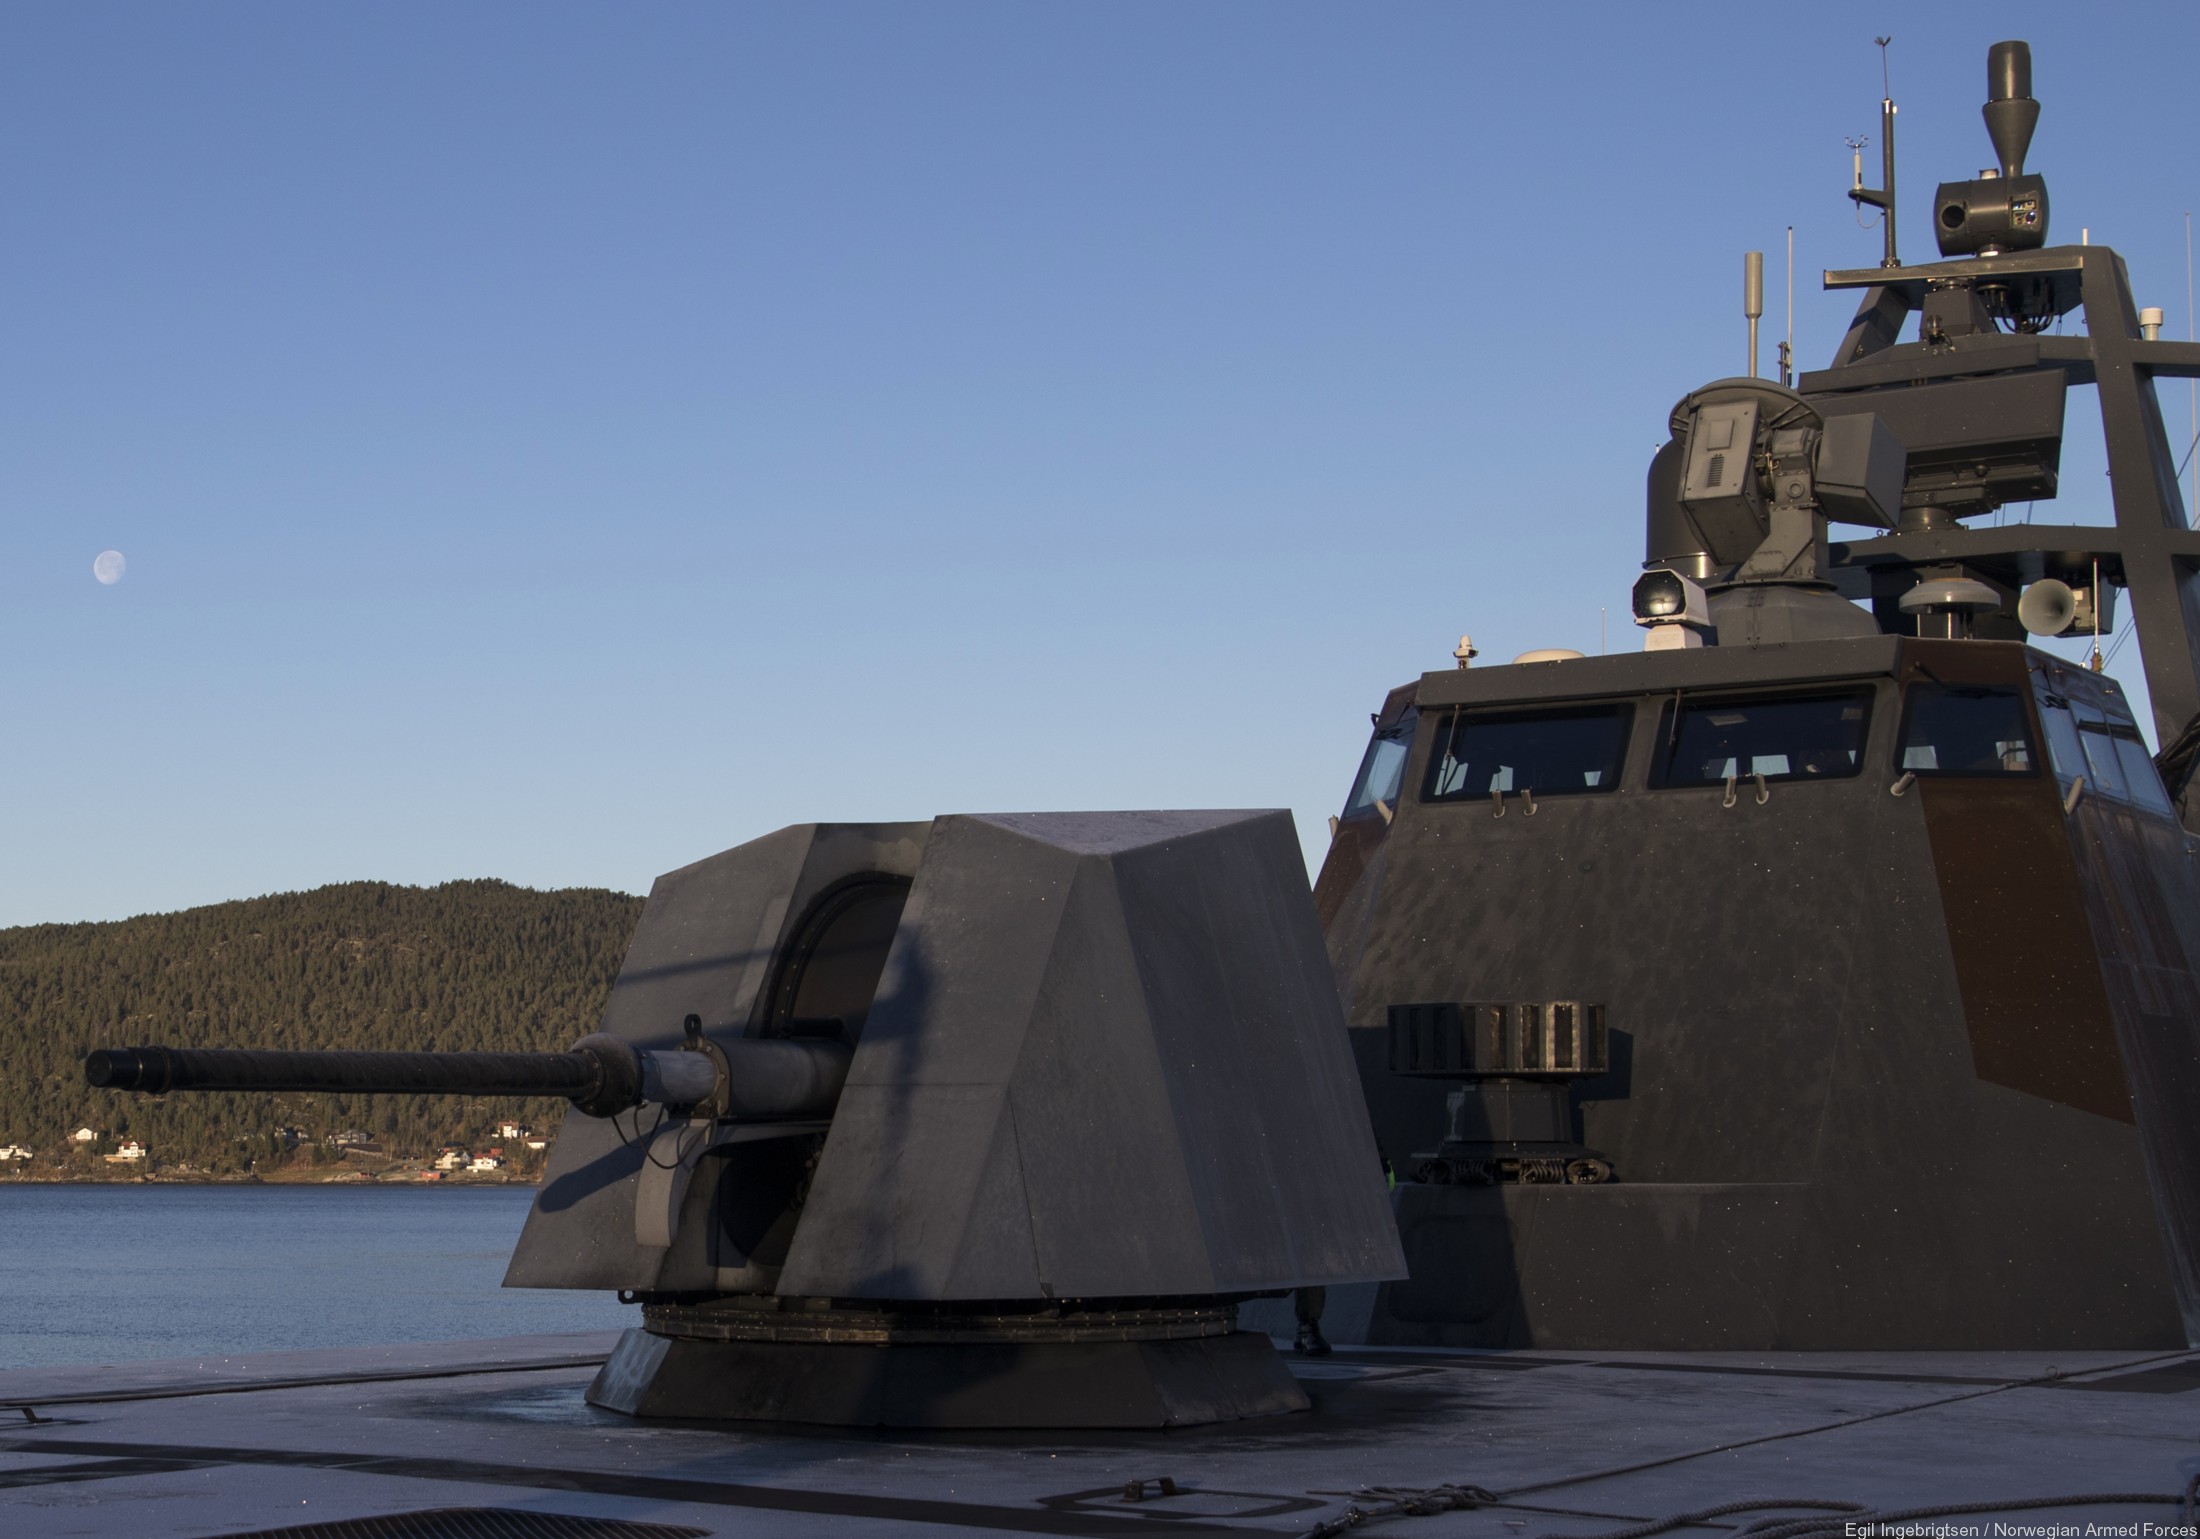 skjold class corvette knm hnoms royal norwegian navy sjoforsvaret 03 oto melara 76/62 gun